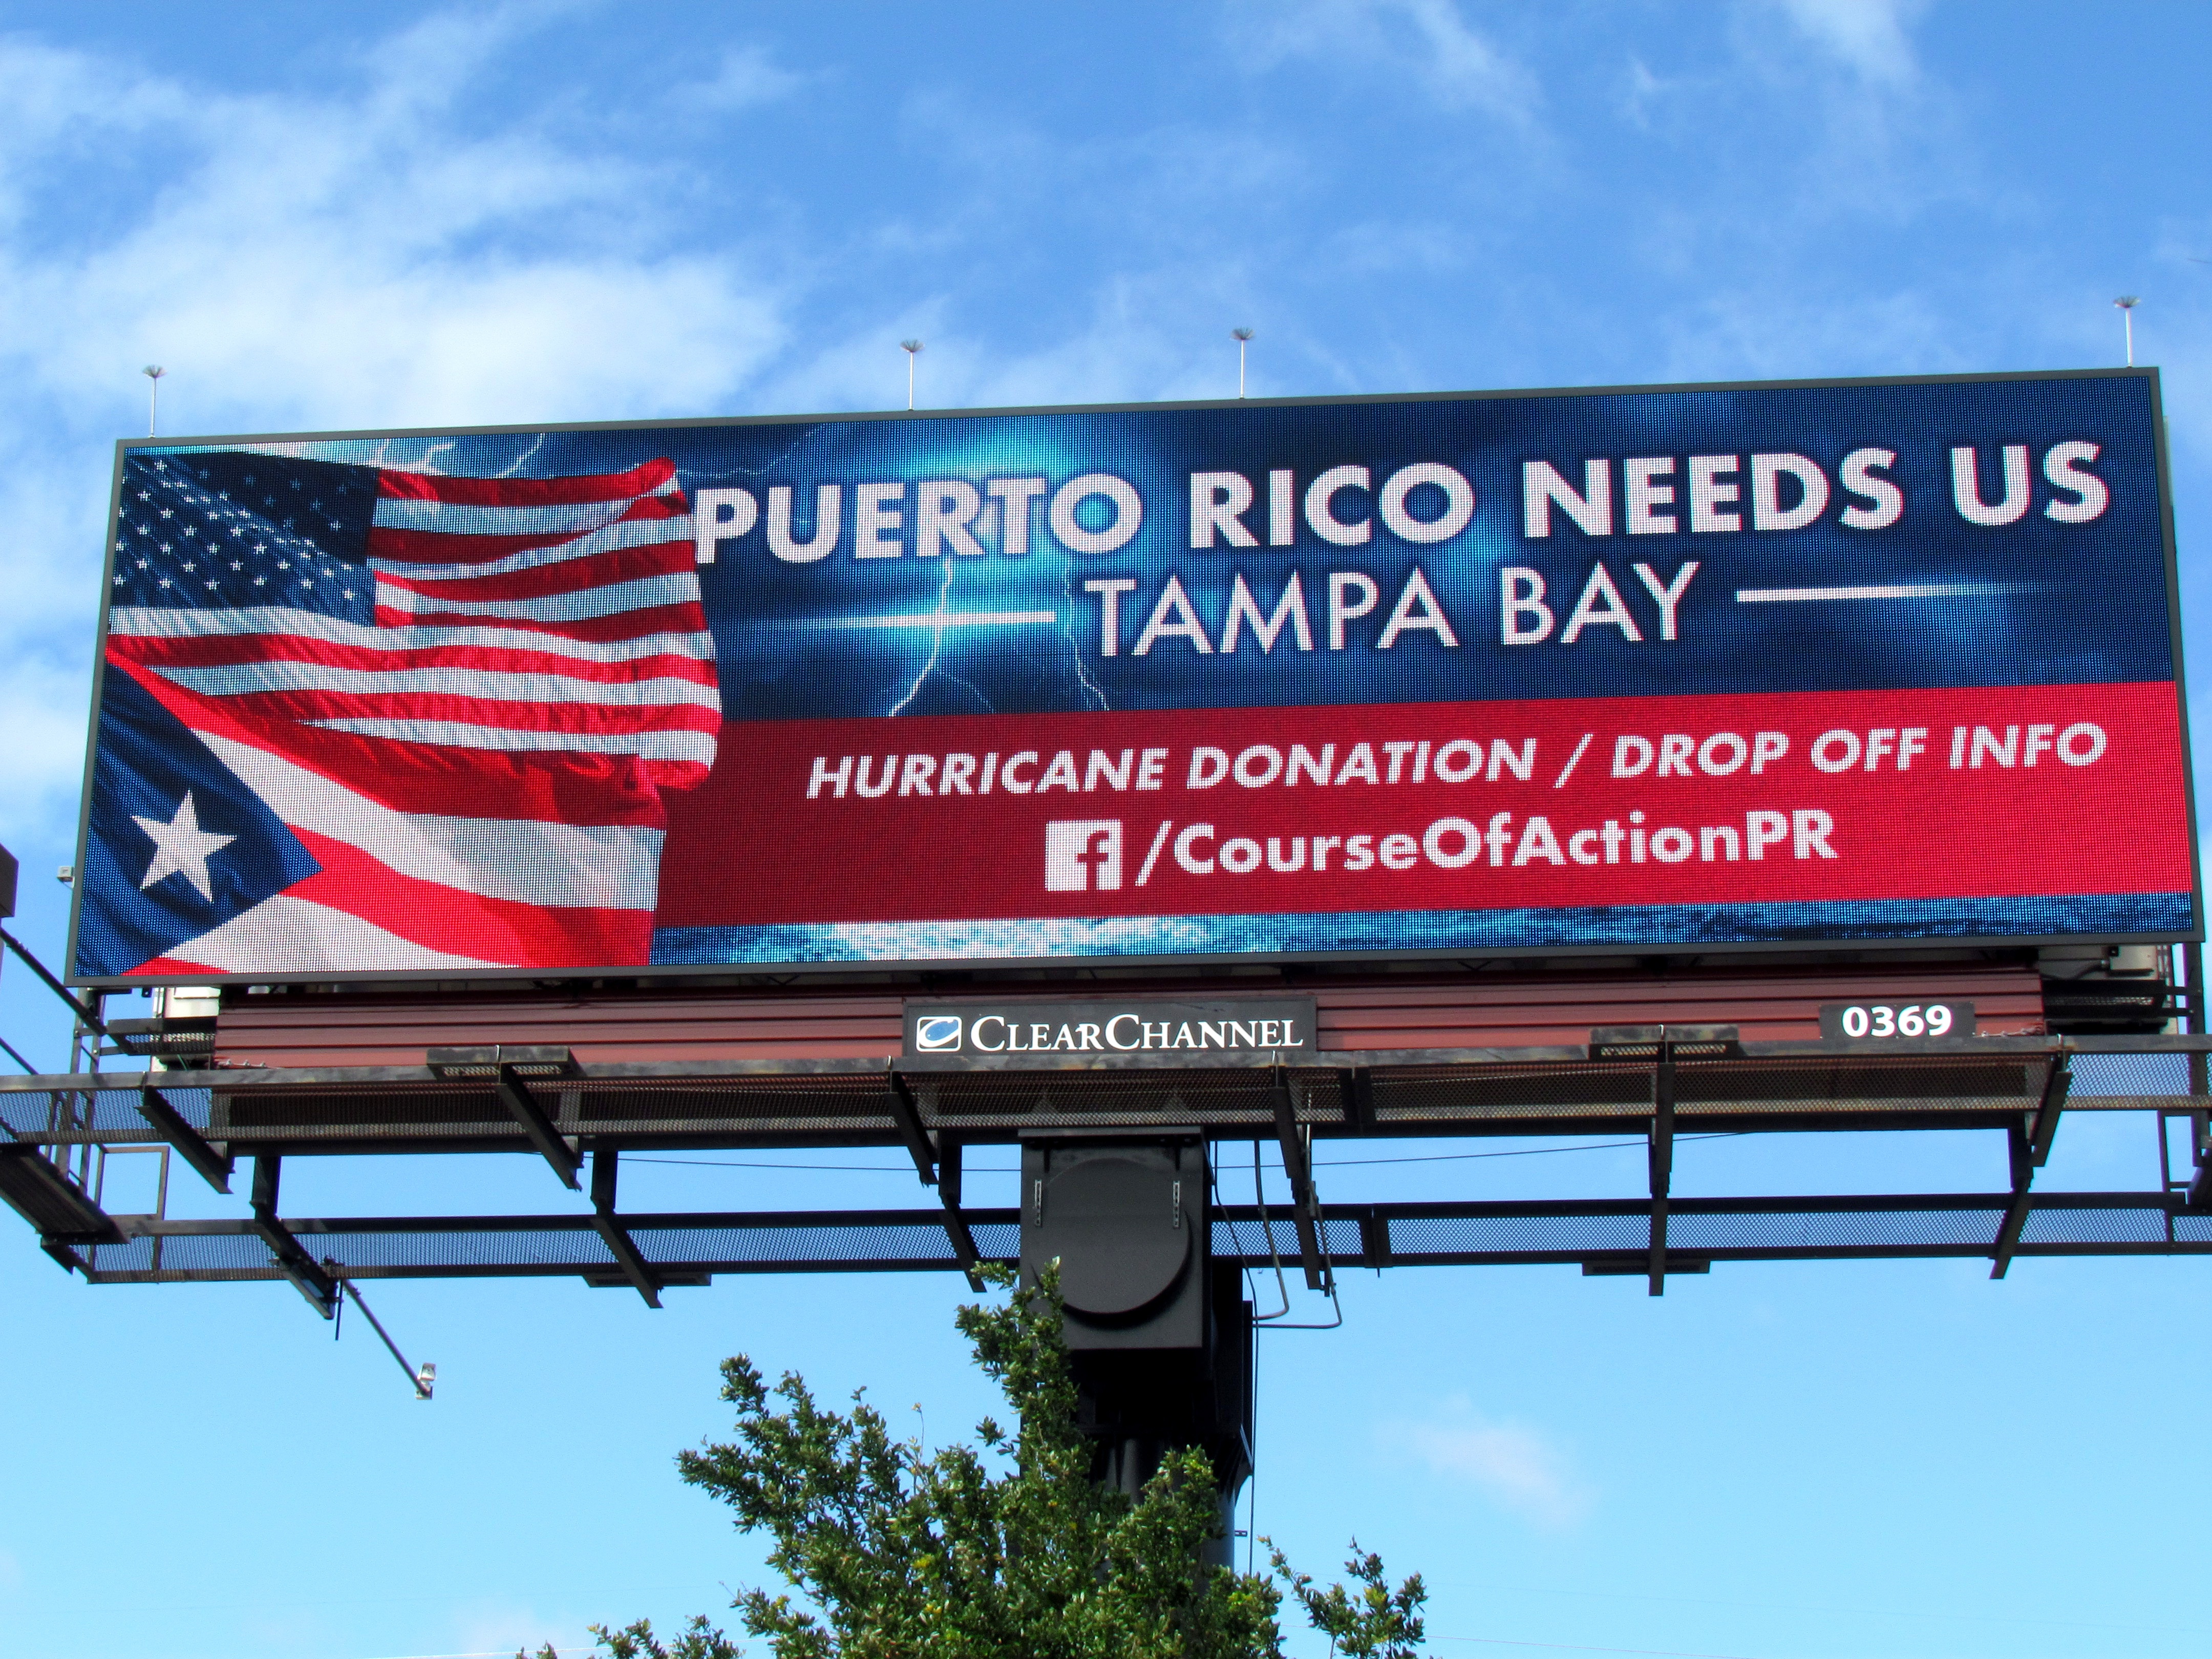 Course of Action Puerto Rico Digital Billboard.jpg